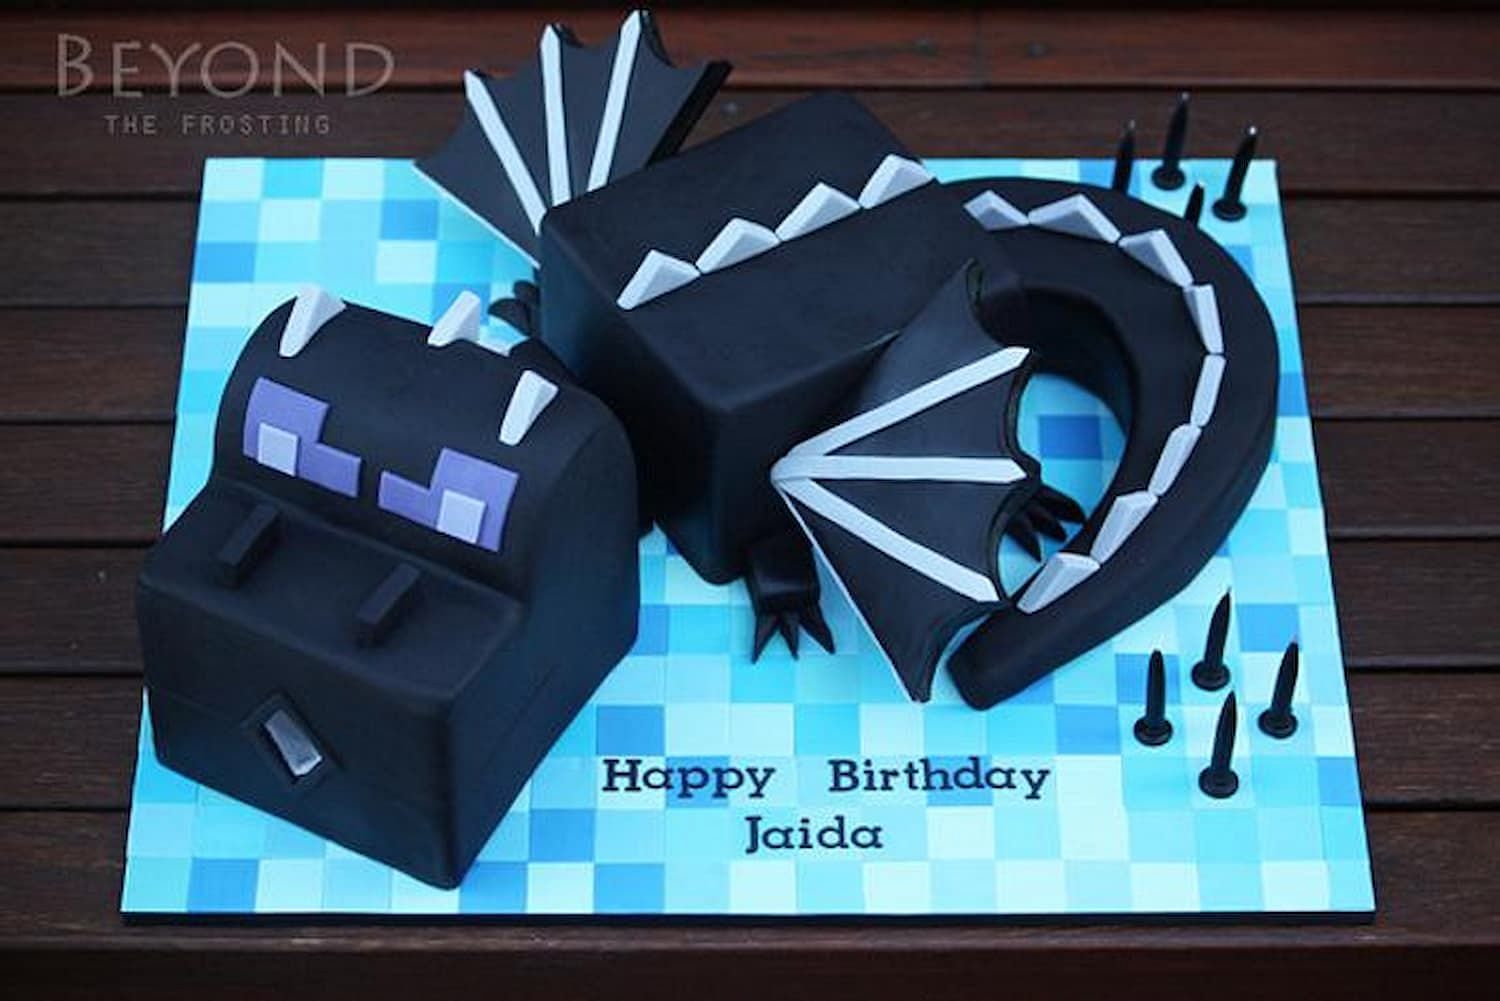 The Ender Dragon even makes for a fierce cake (Image via cakesdecor.com)